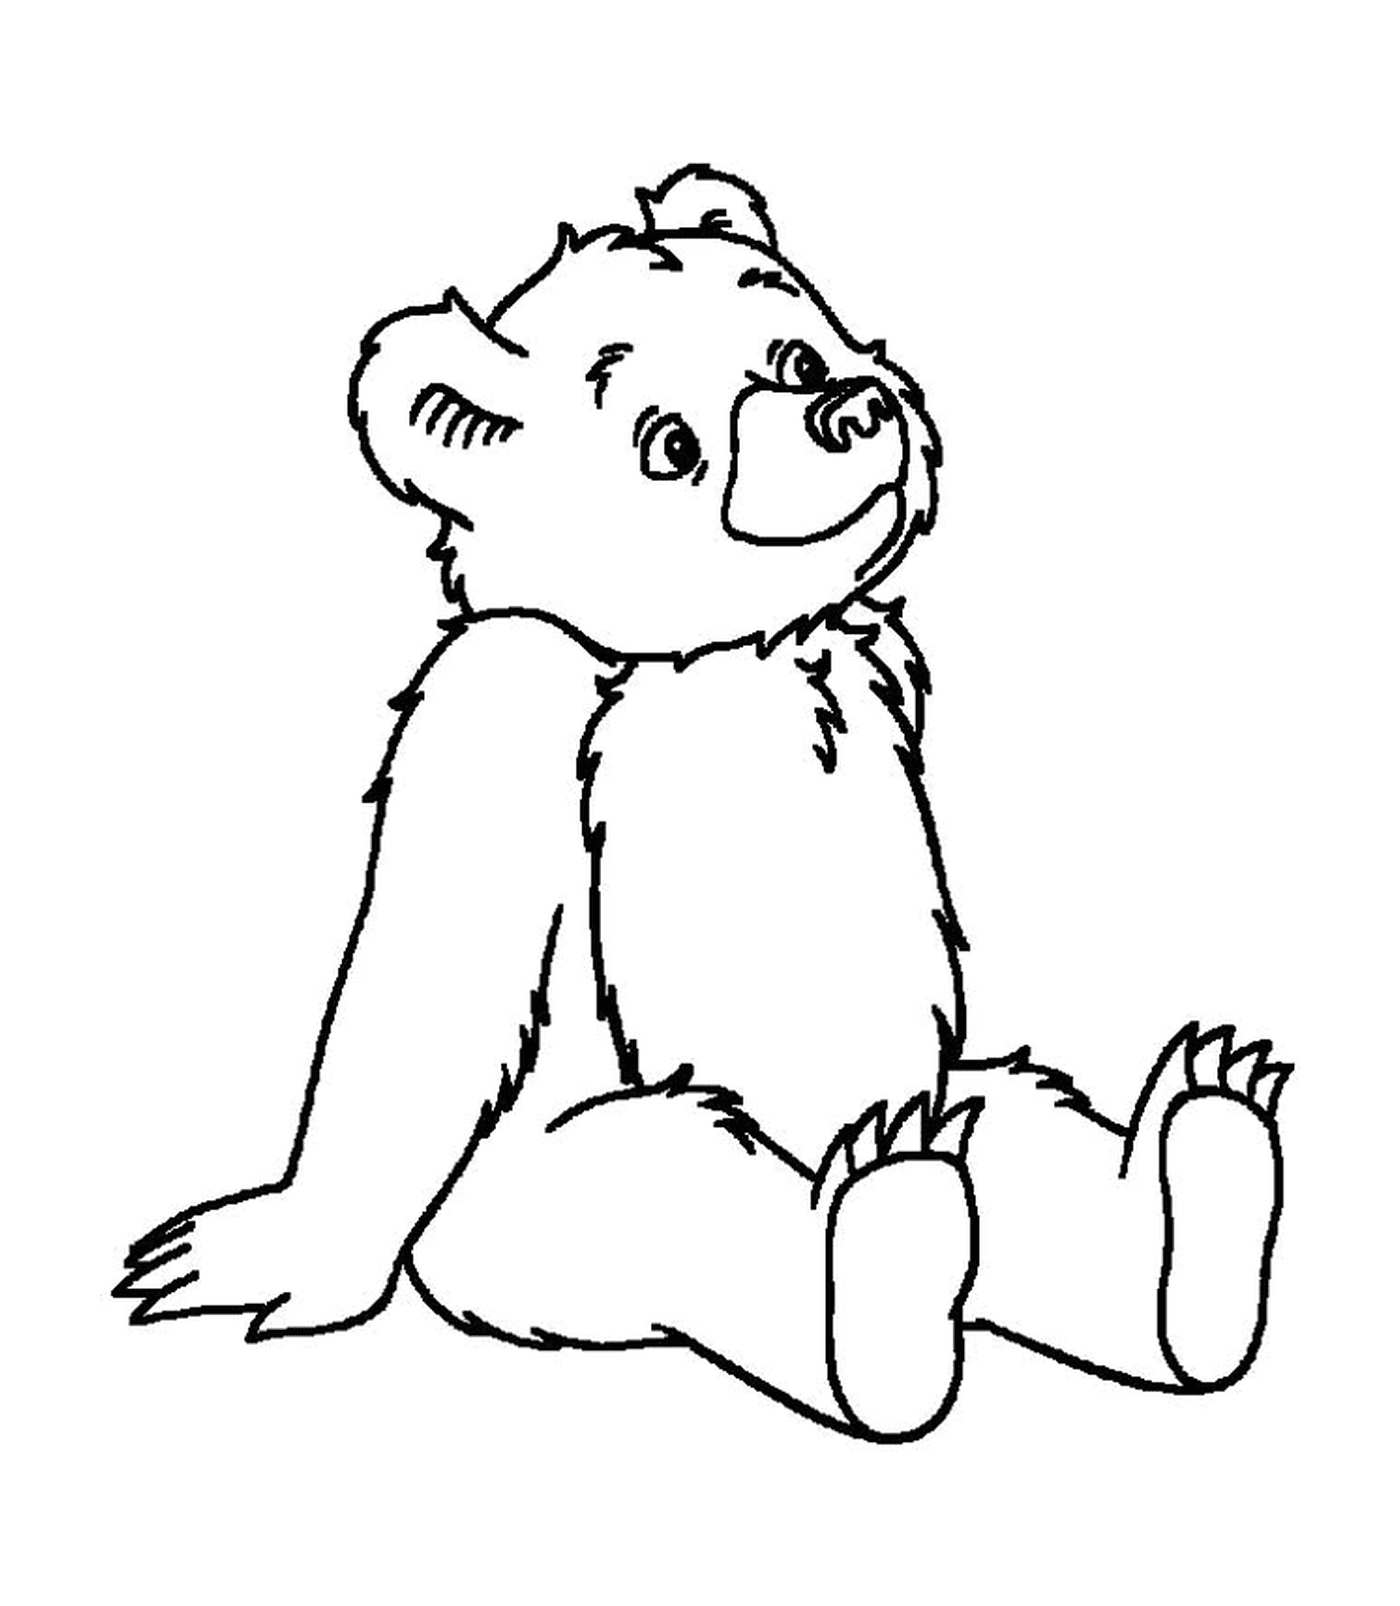  A teddy bear 